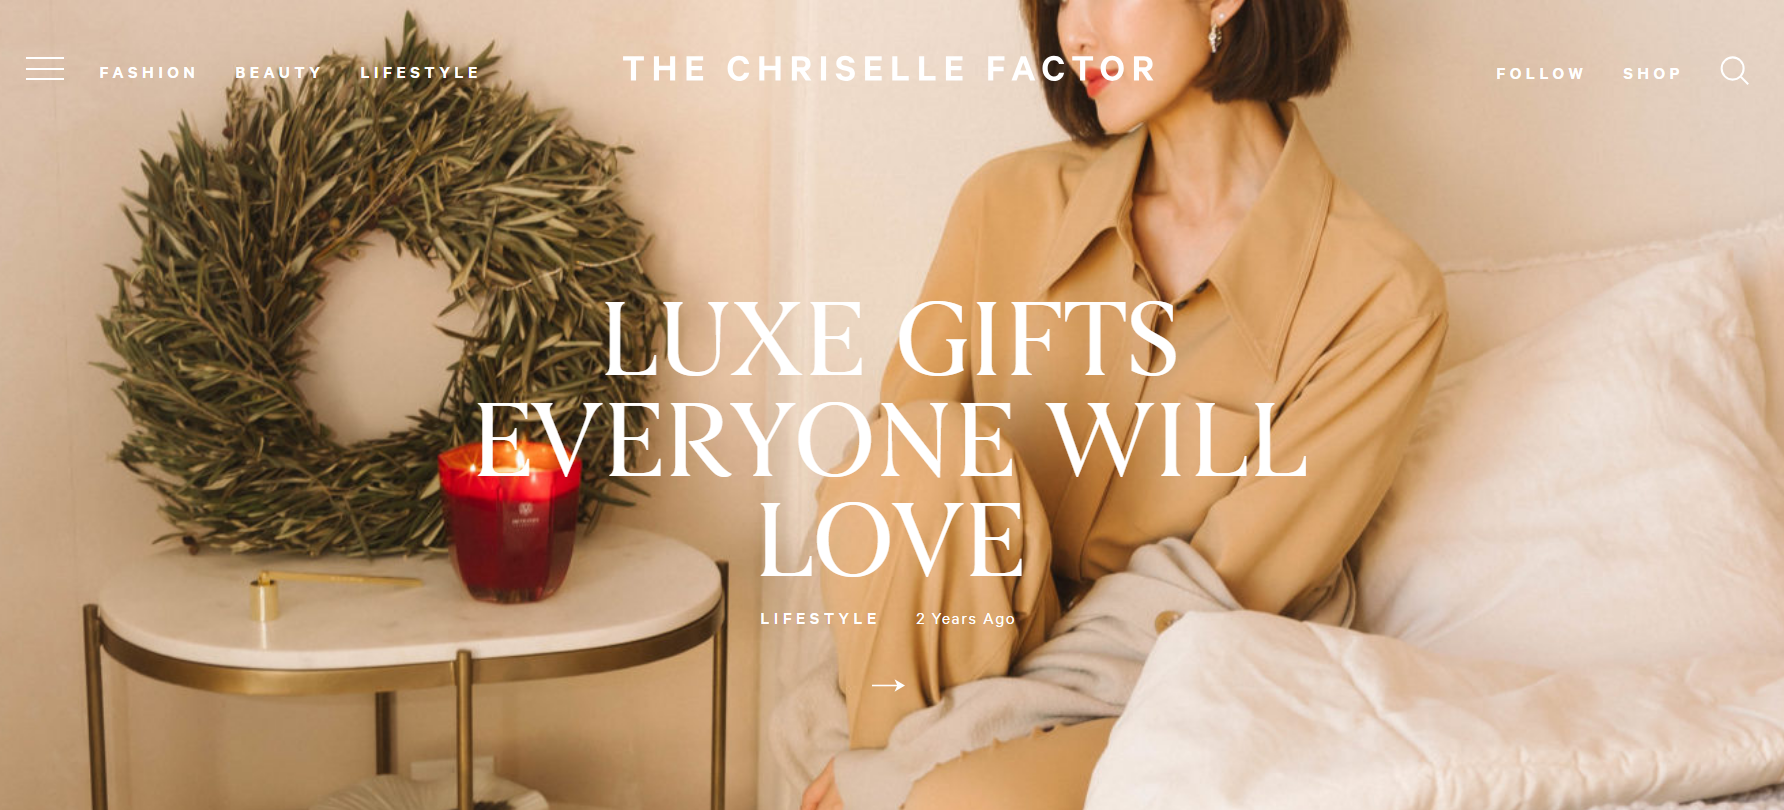 Le site Web du blog de style de vie de Chriselle Factor